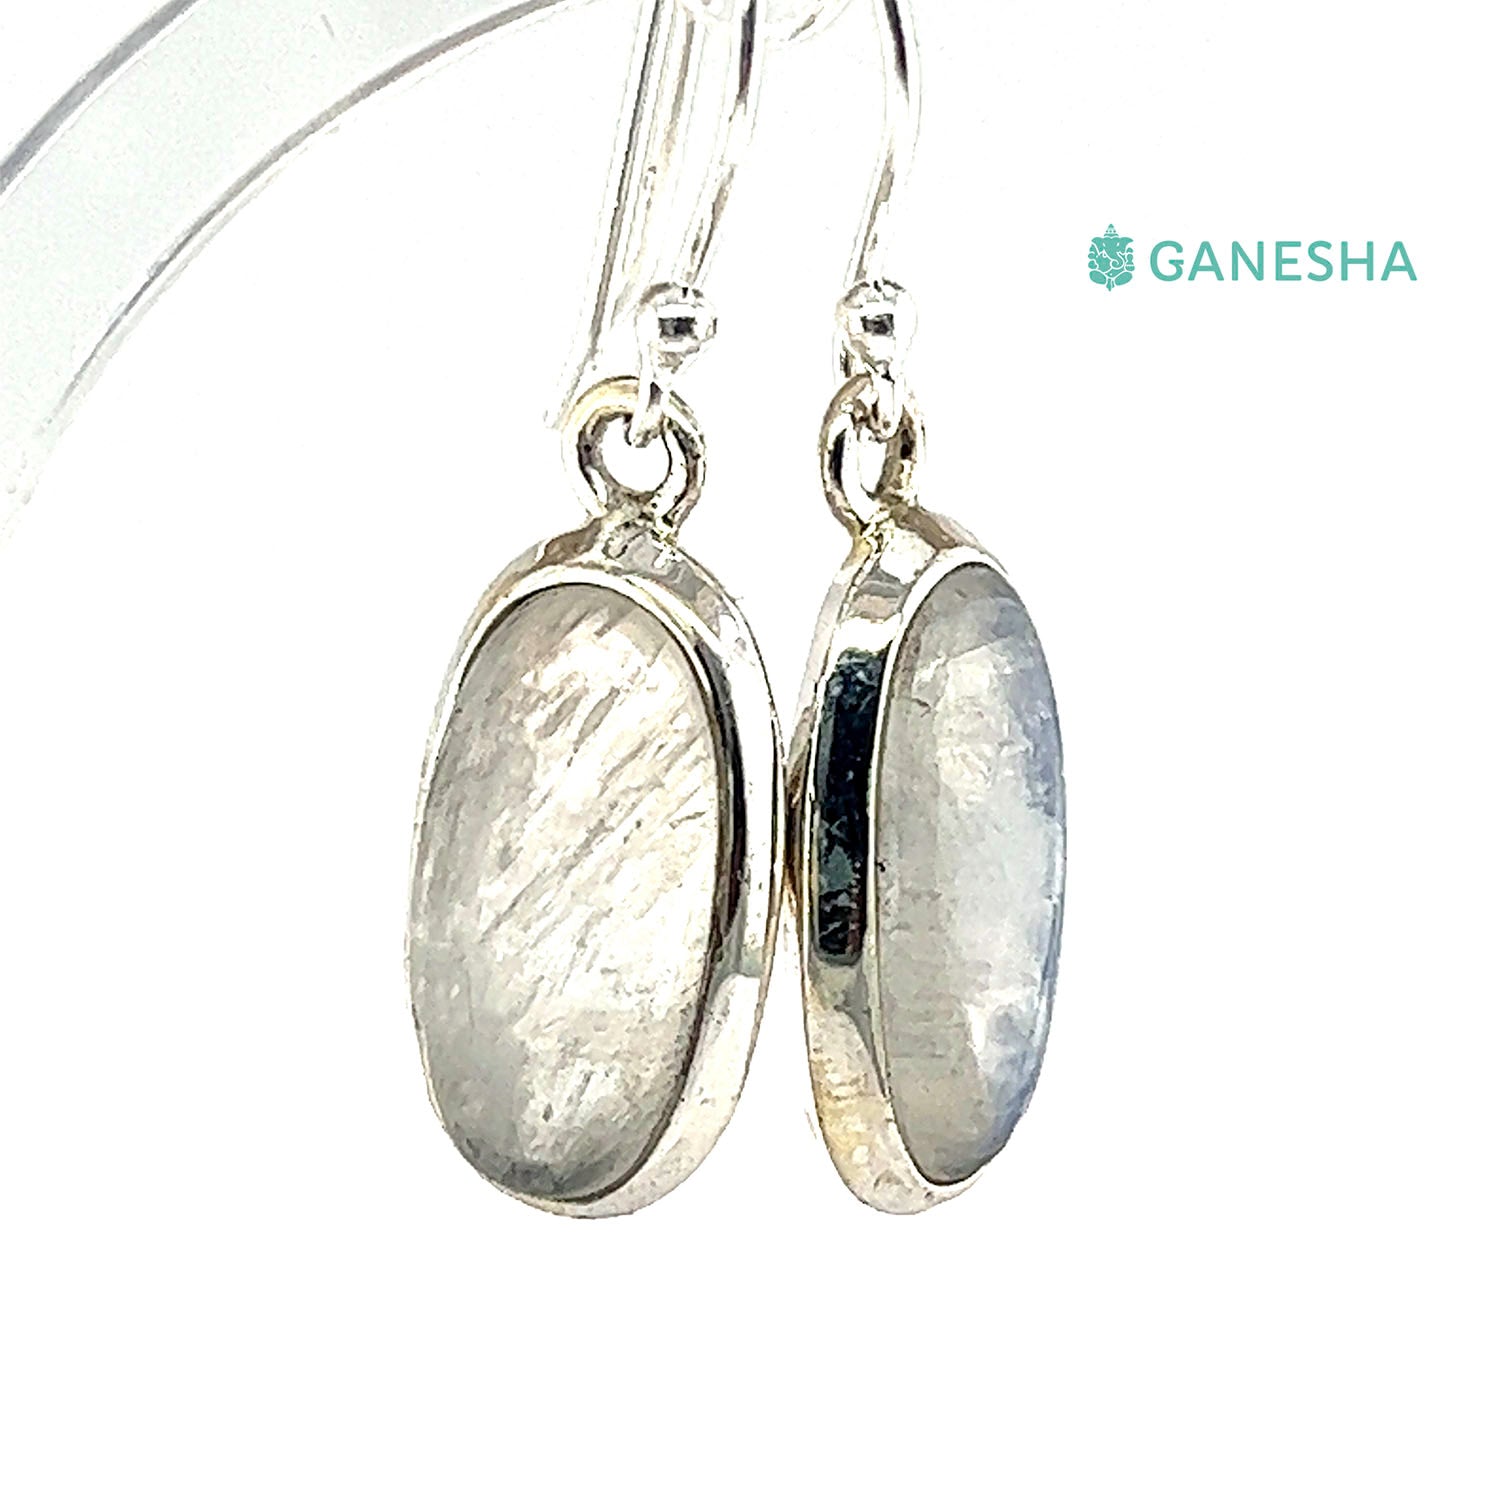 Ganesha Handicrafts, Moonstone Double-Drop Earrings - Sterling Silver (925), Moonstone Double-Drop Silver Earrings, 925 Double Drop Silver Earrings, Women's Trending Earring, Womens Stylized Earrings.  